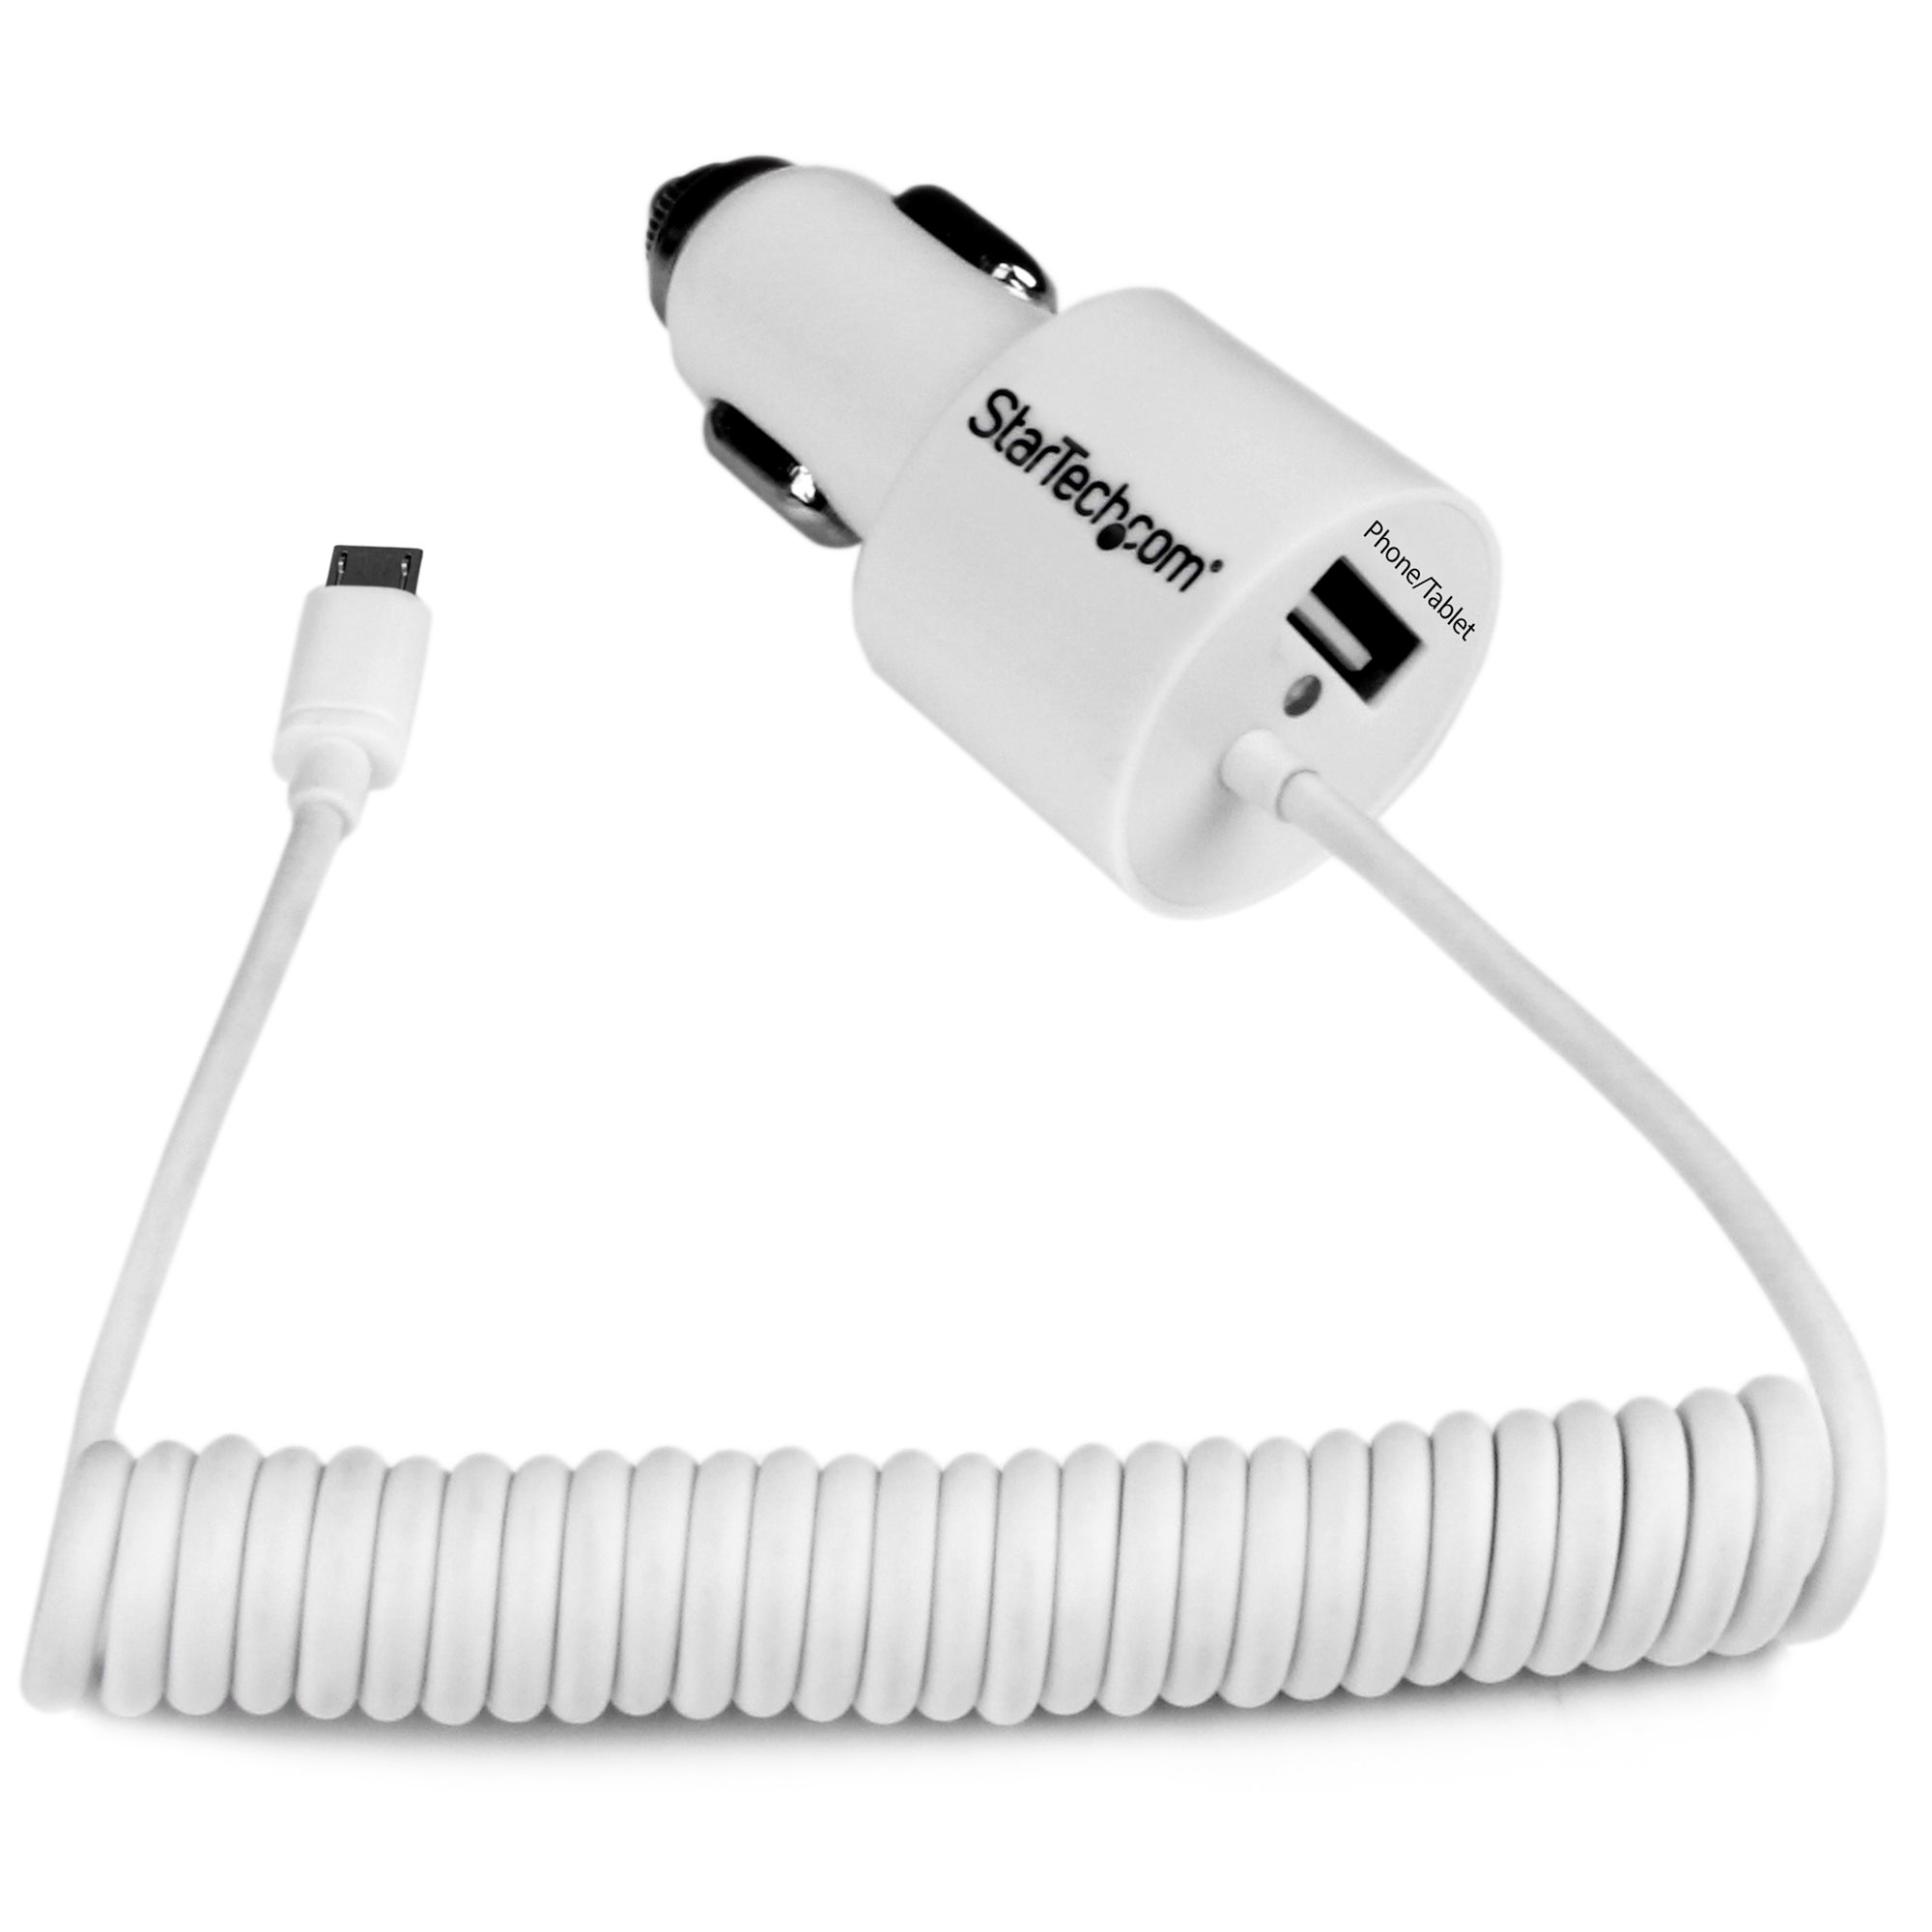 Sonic, Cargador USB para coche (8422), Blanco